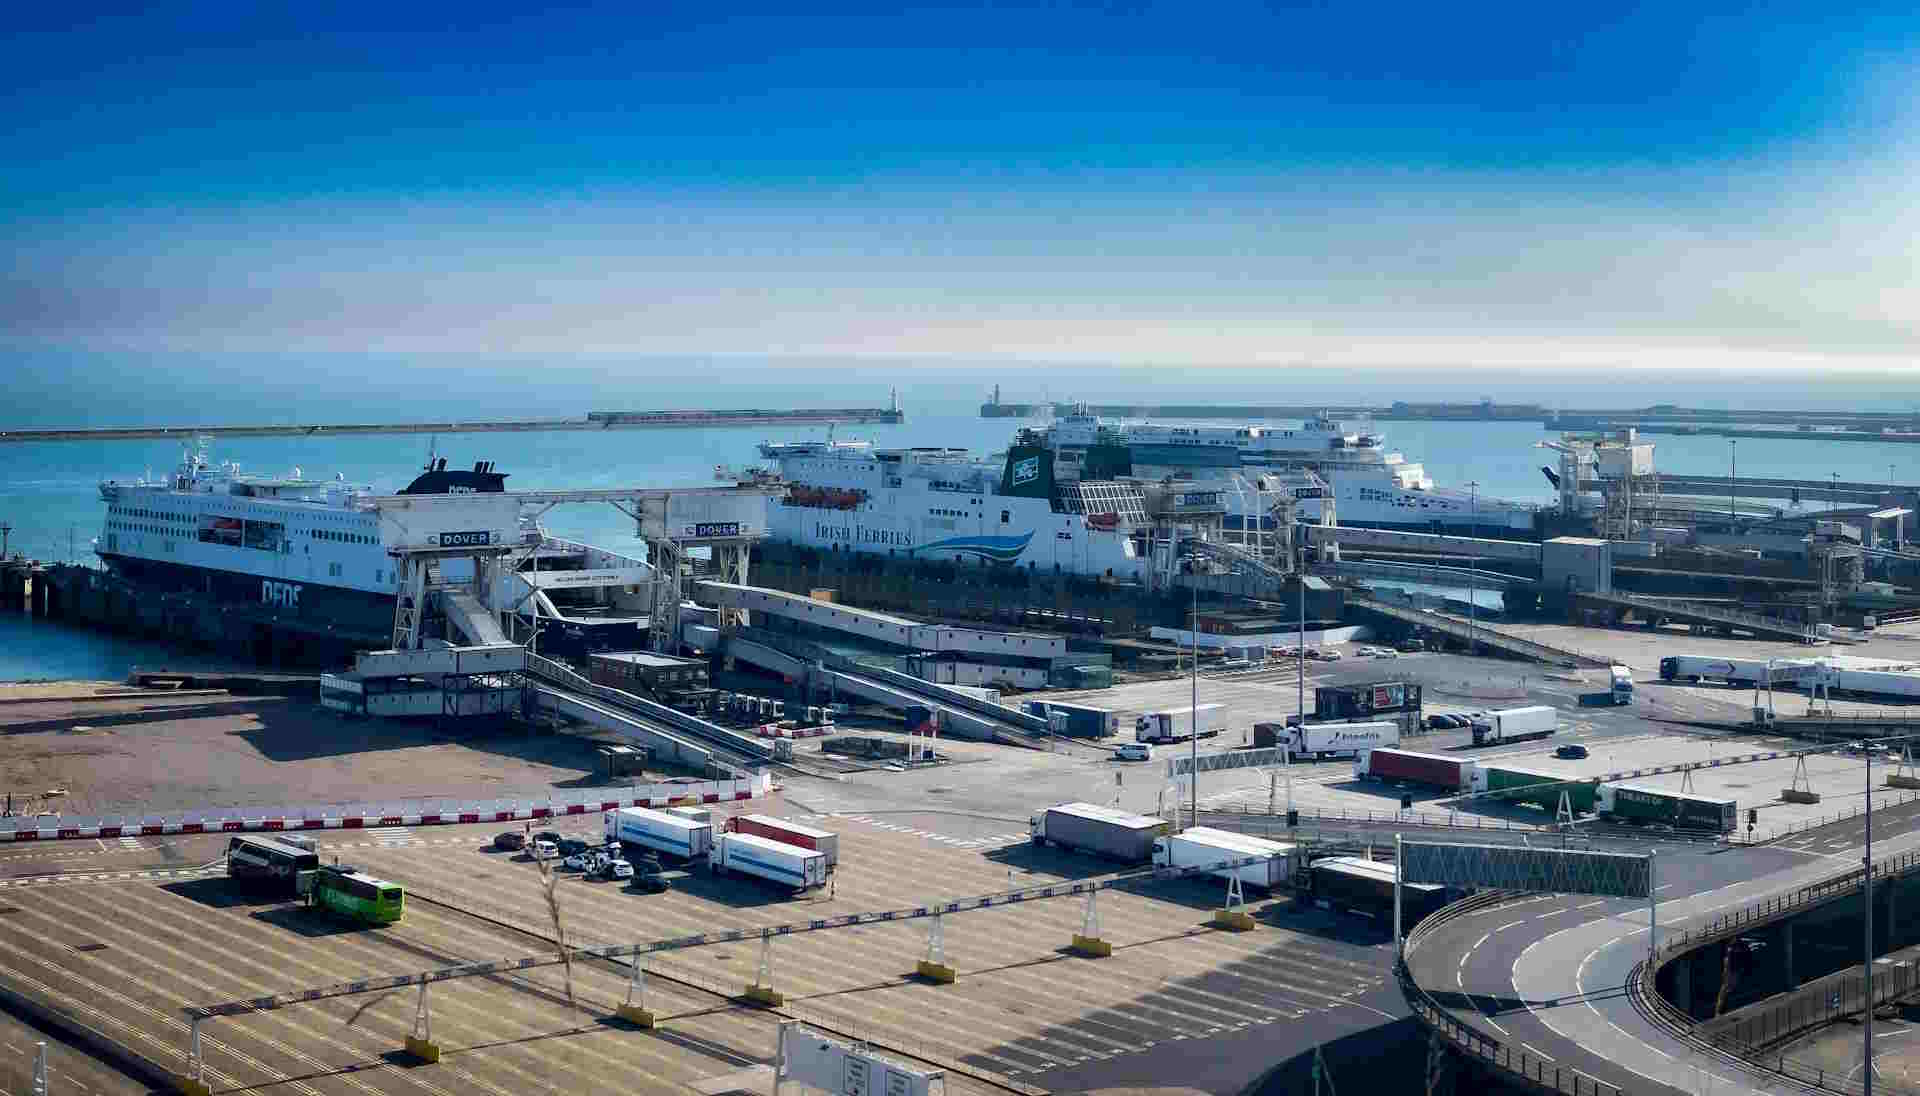 Trasporto merci via mare con veicoli trainati: siglato accordo Italia-Egitto